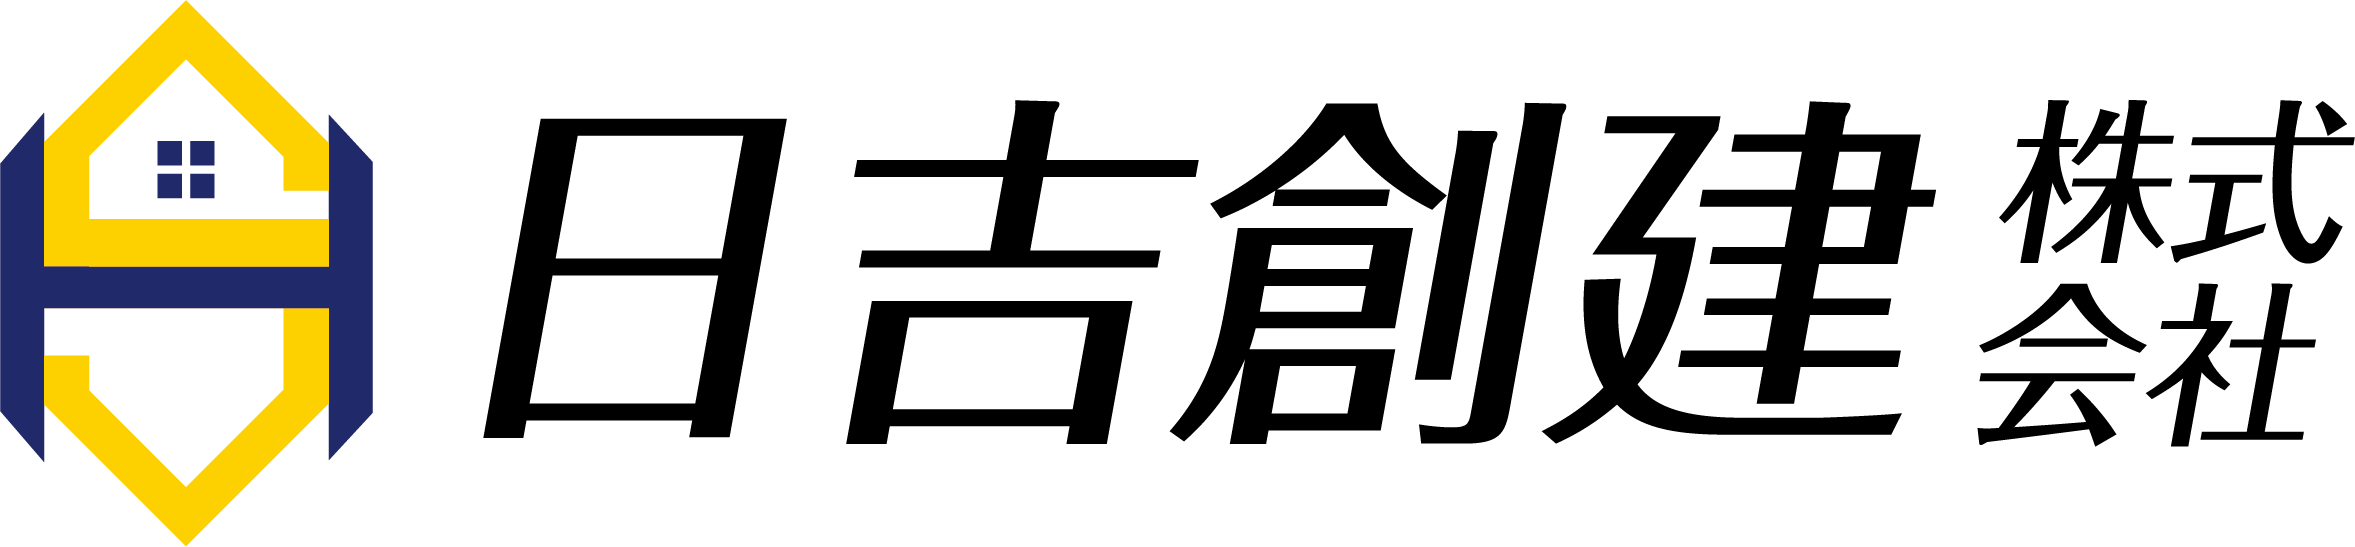 日吉創建株式会社のロゴ